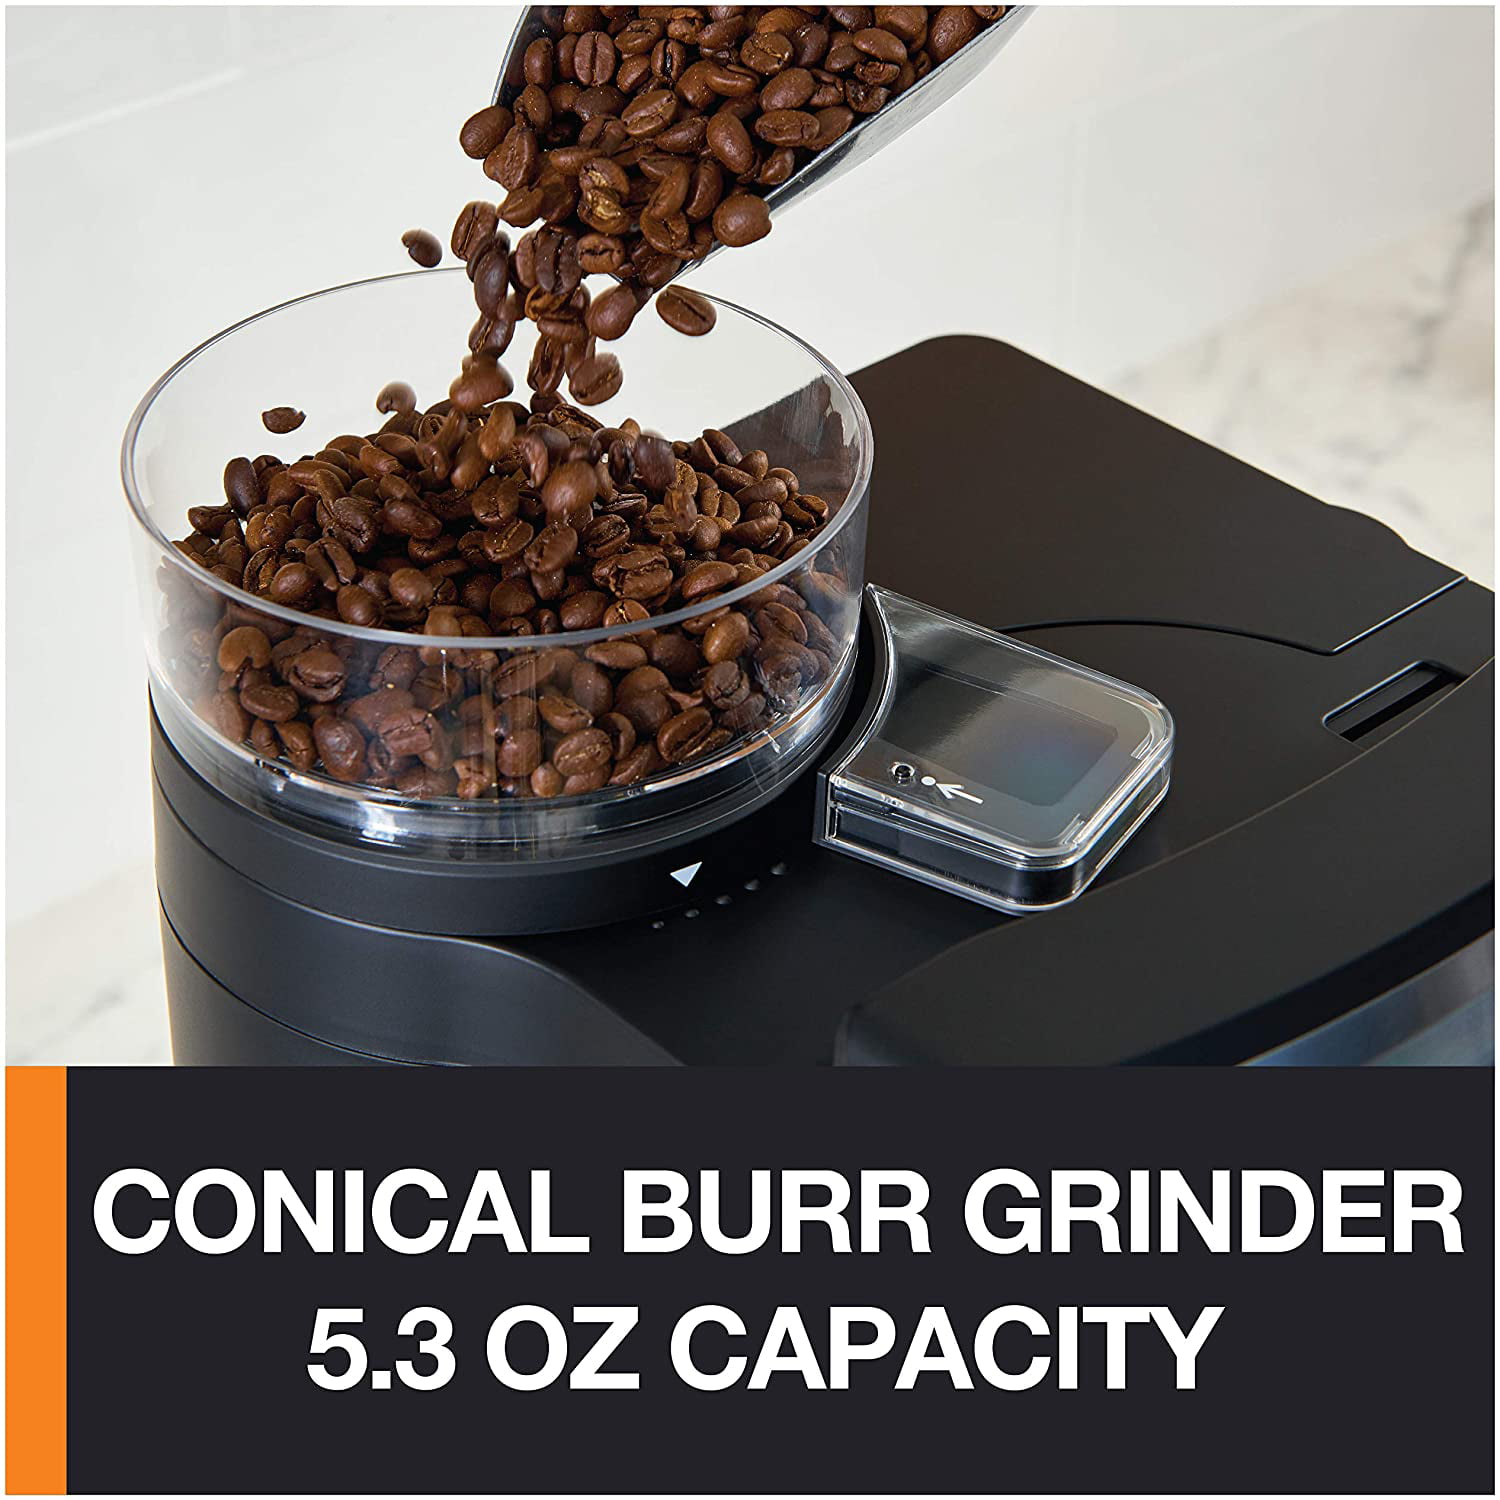 Best Buy: Krups Combi Espresso Maker/10-Cup Coffeemaker Black XP160050